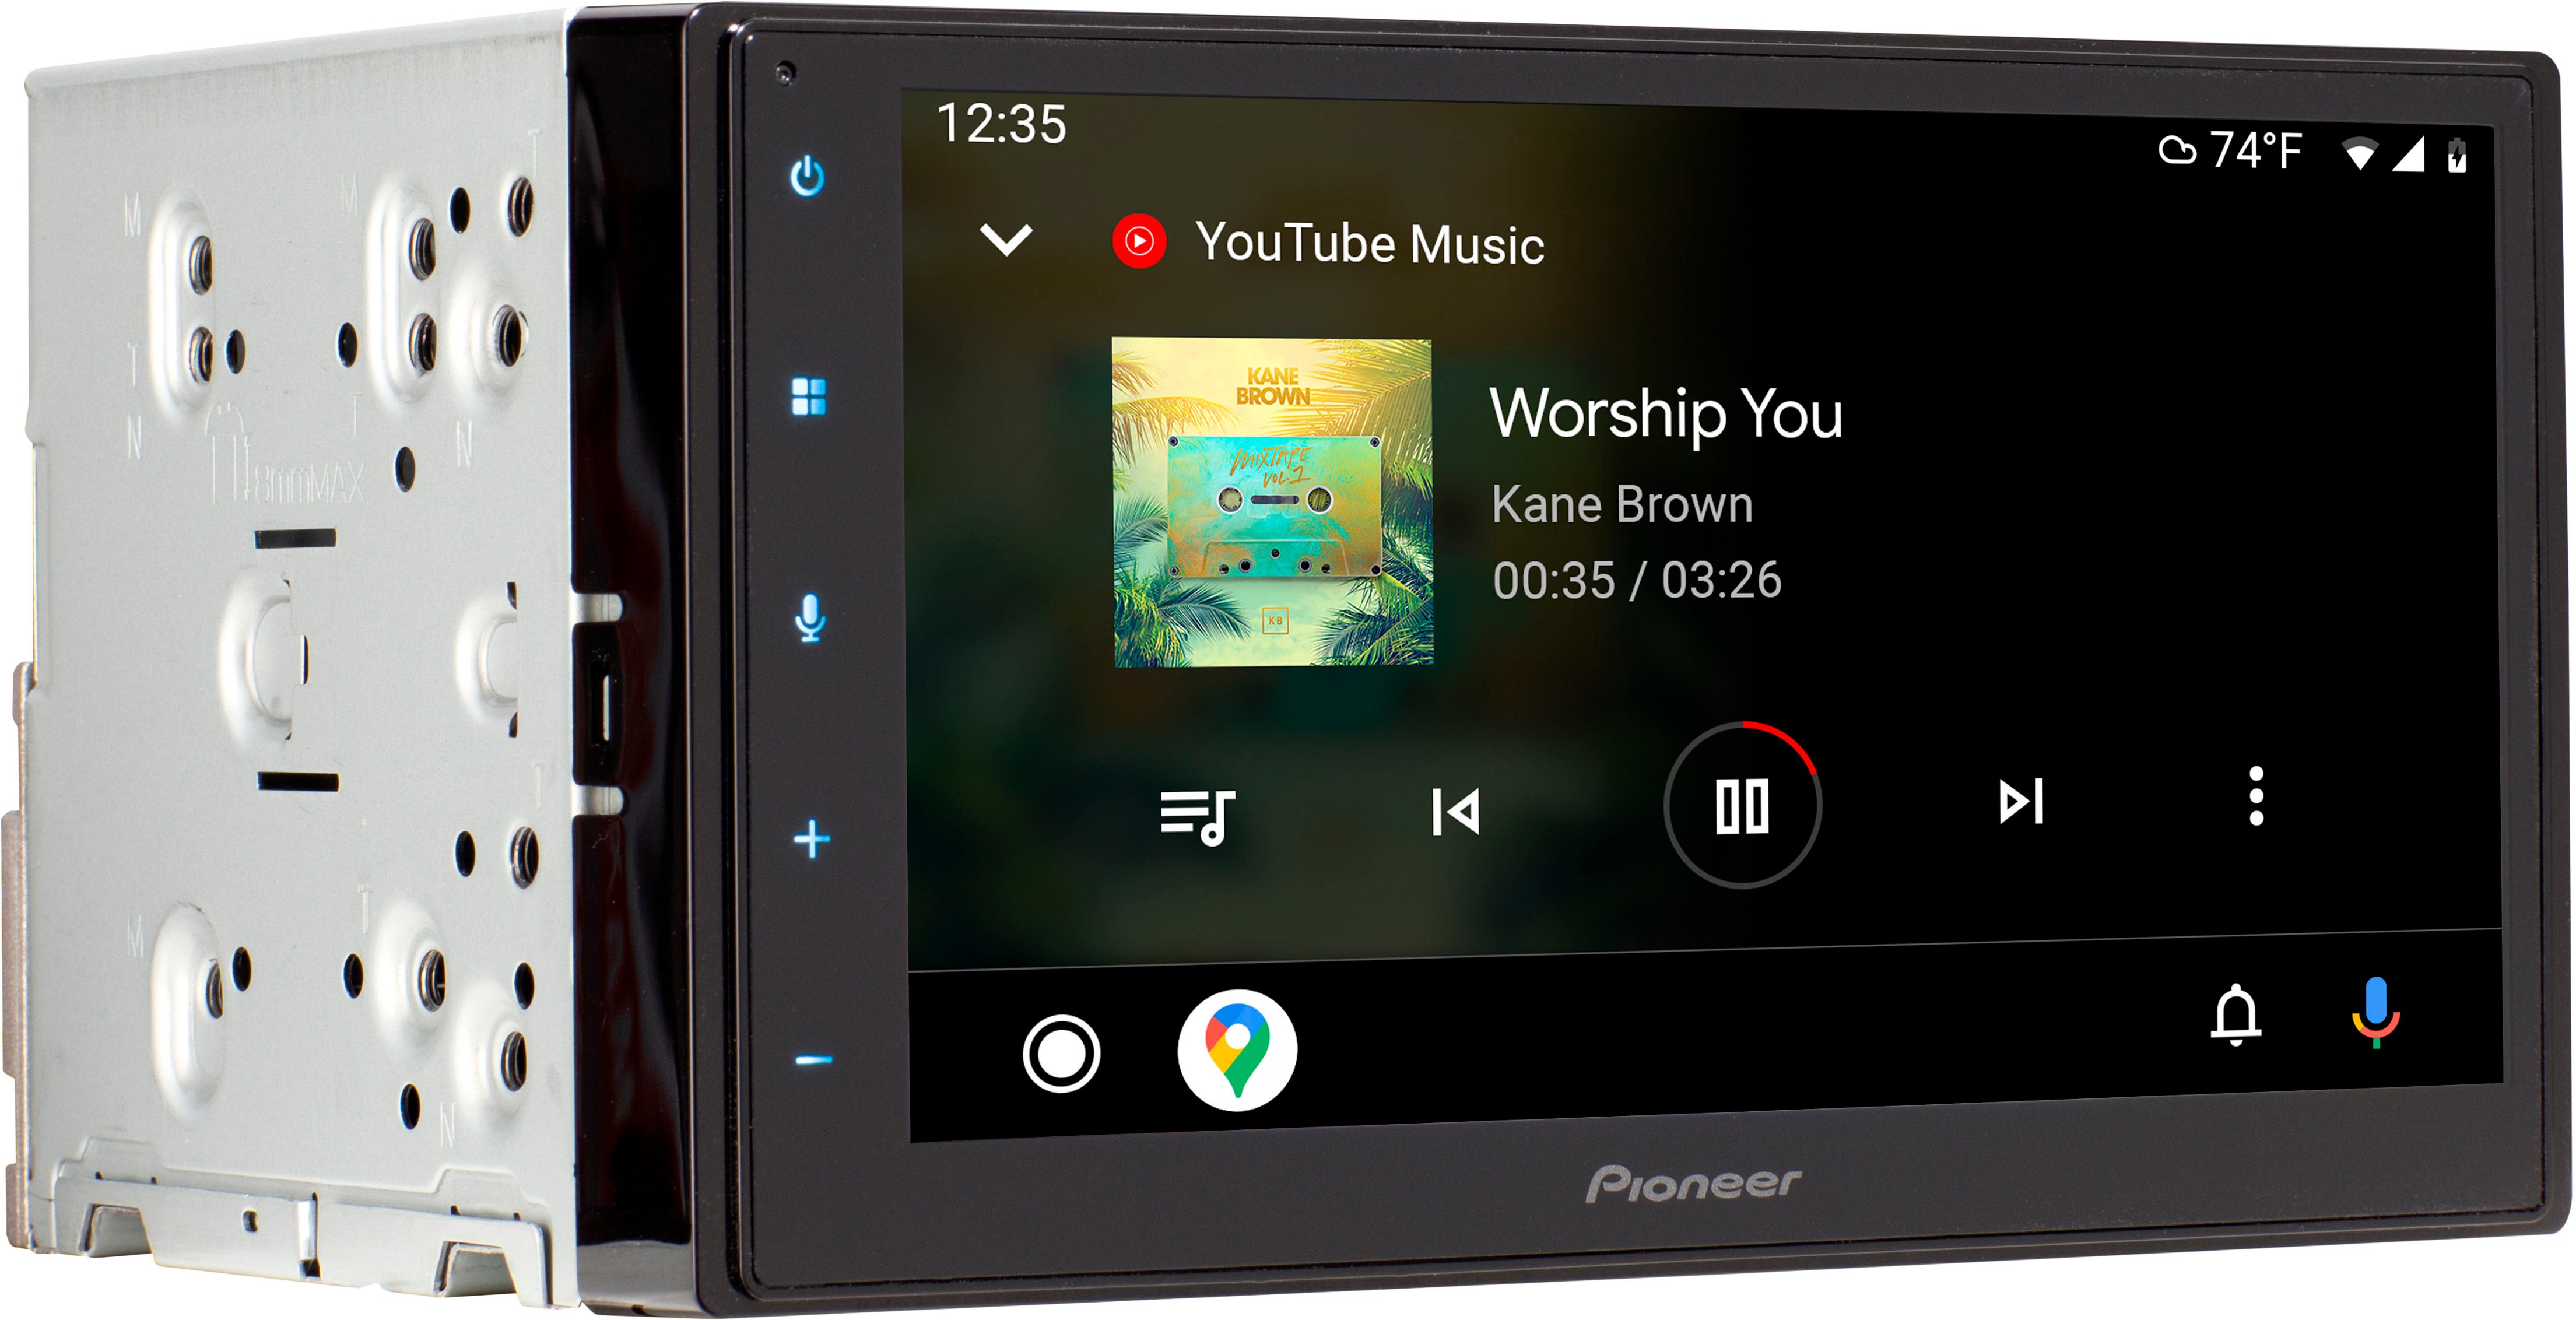  Pioneer DMH-W2770NEX Receptor multimedia digital con Apple  CarPlay inalámbrico y Android Auto, pantalla táctil capacitiva de 6.8,  doble DIN, Bluetooth y WiFi integrados,  Alexa a través de la  aplicación 